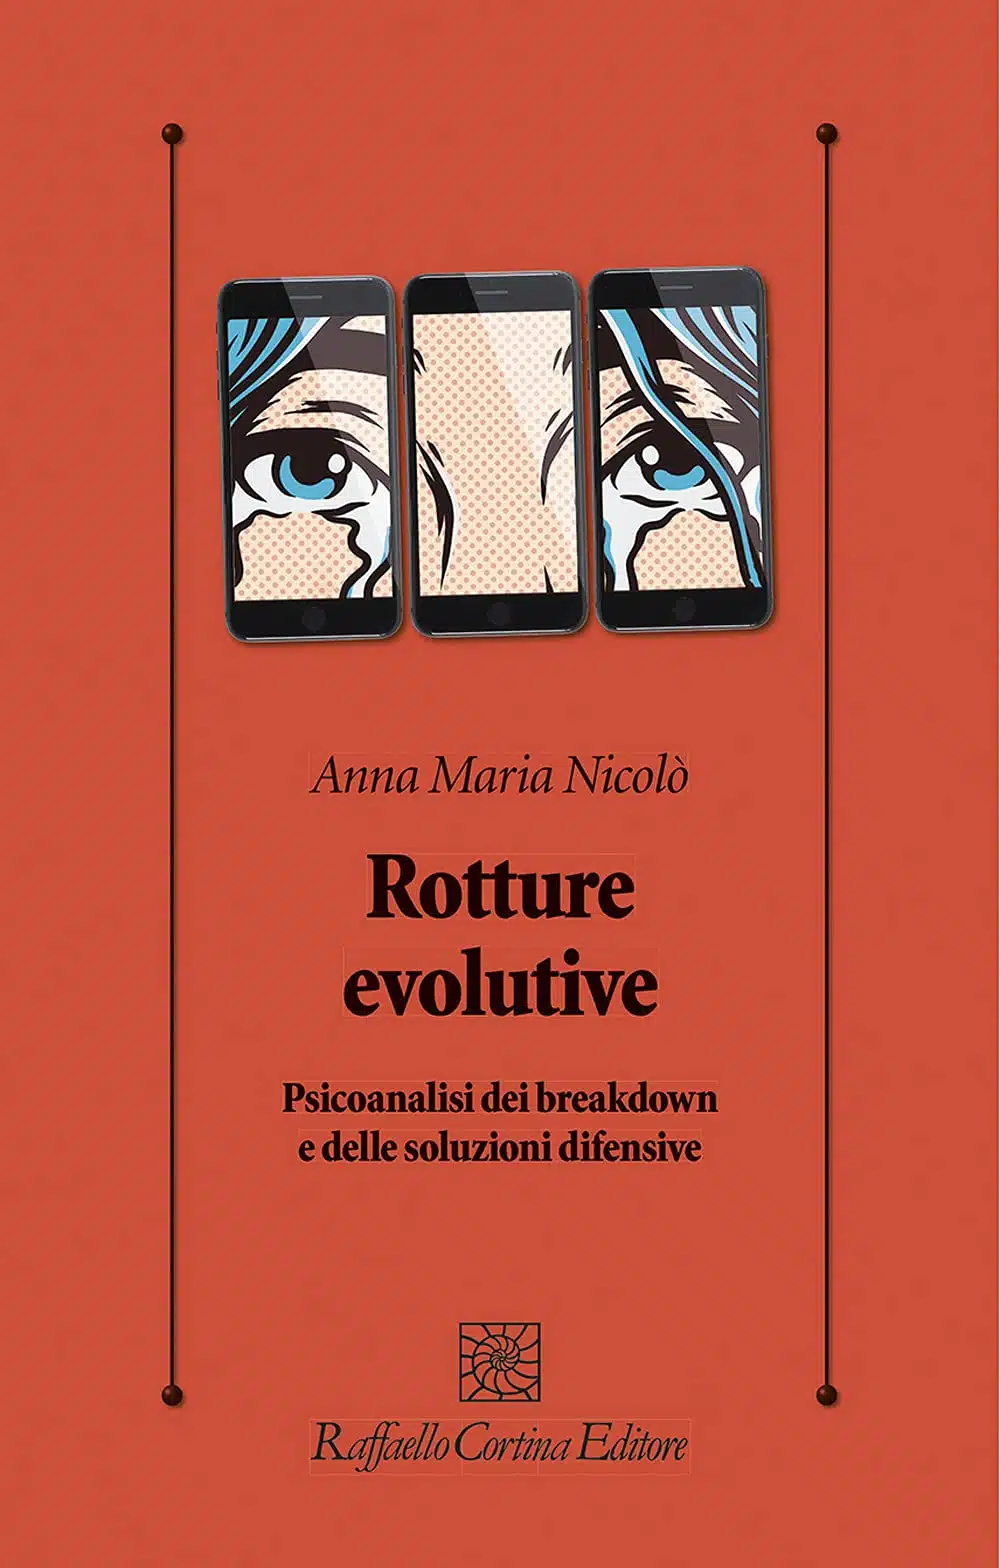 Rotture evolutive (2021) di Anna Maria Nicolo - Recensione del libro